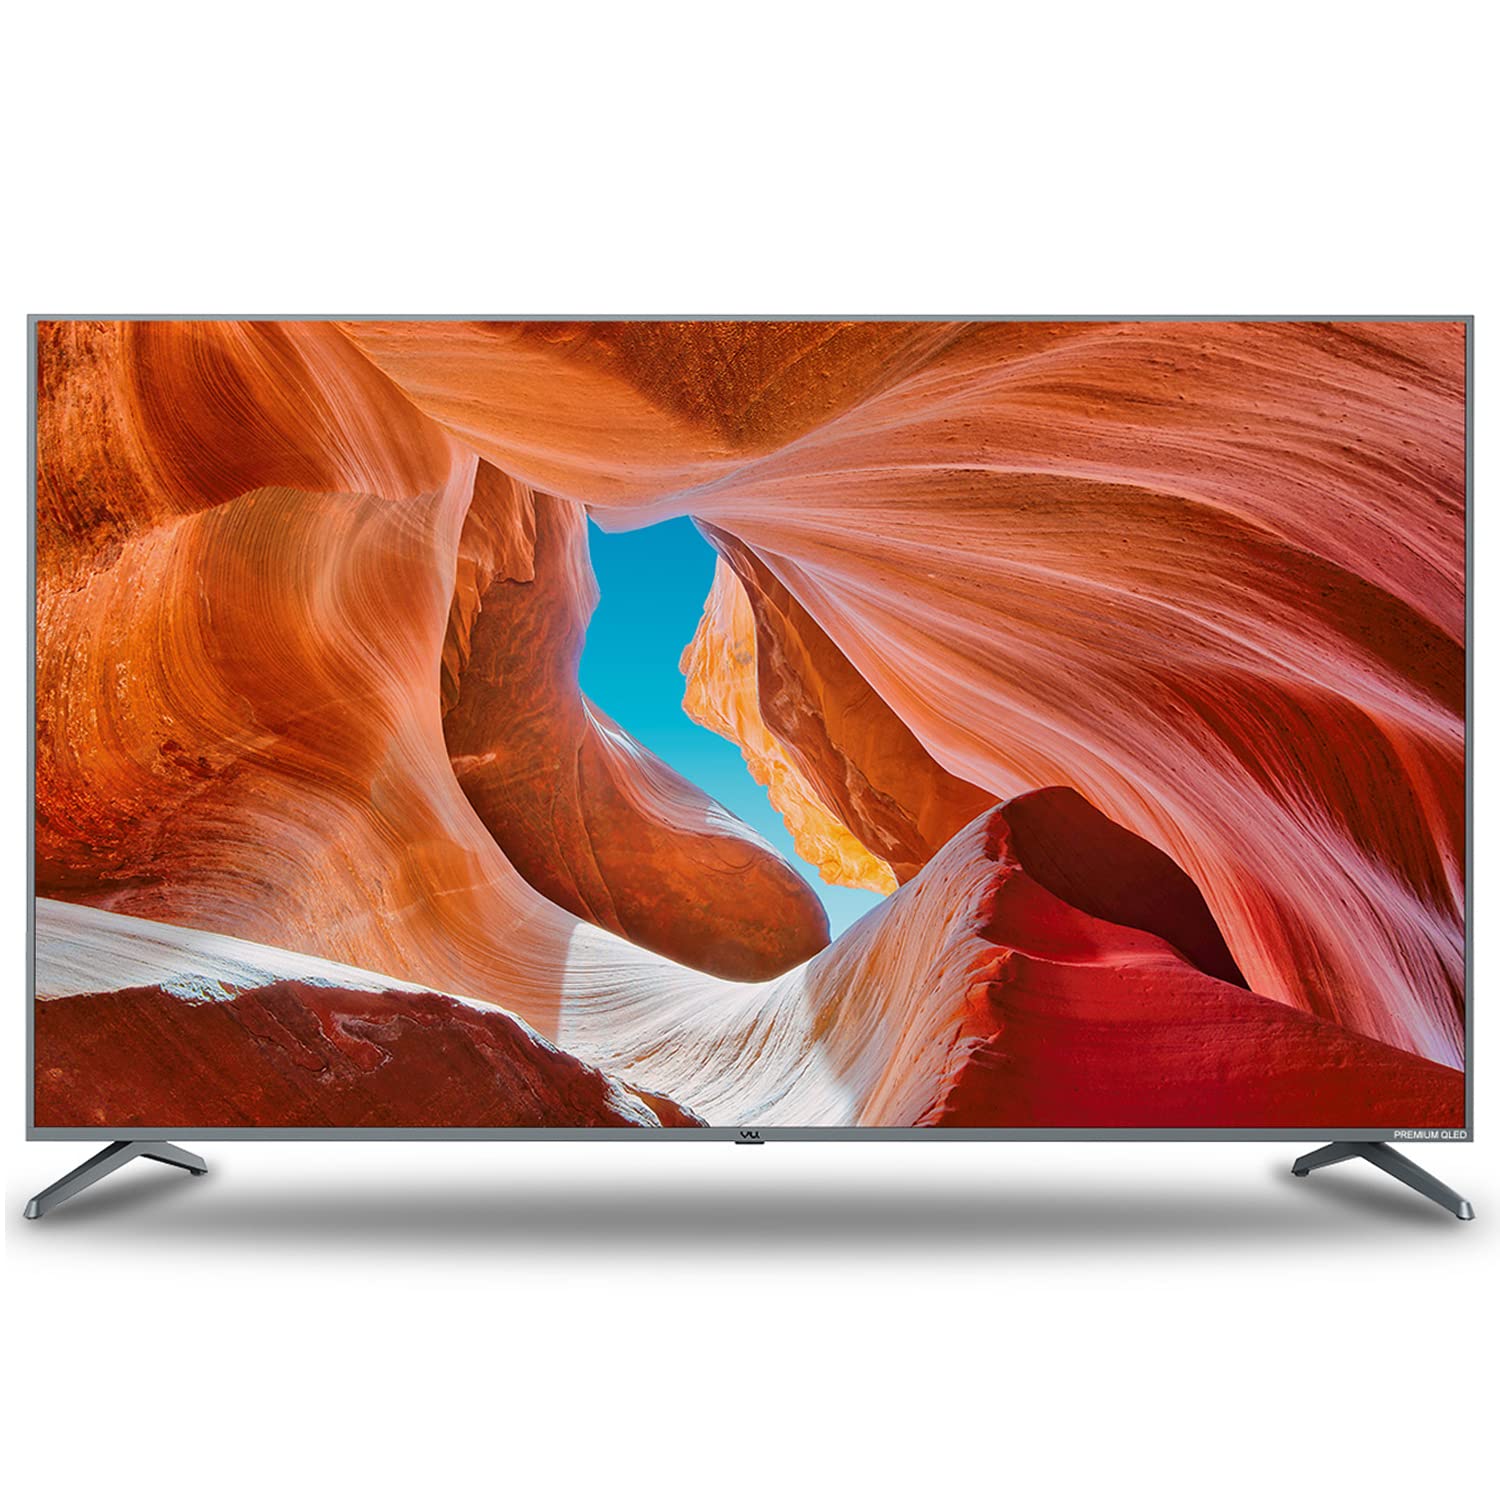 Smart TV: ये है सबसे सस्ता 75 इंच का स्मार्ट टीवी, फीचर्स जानकर हो जाएंगे खुश